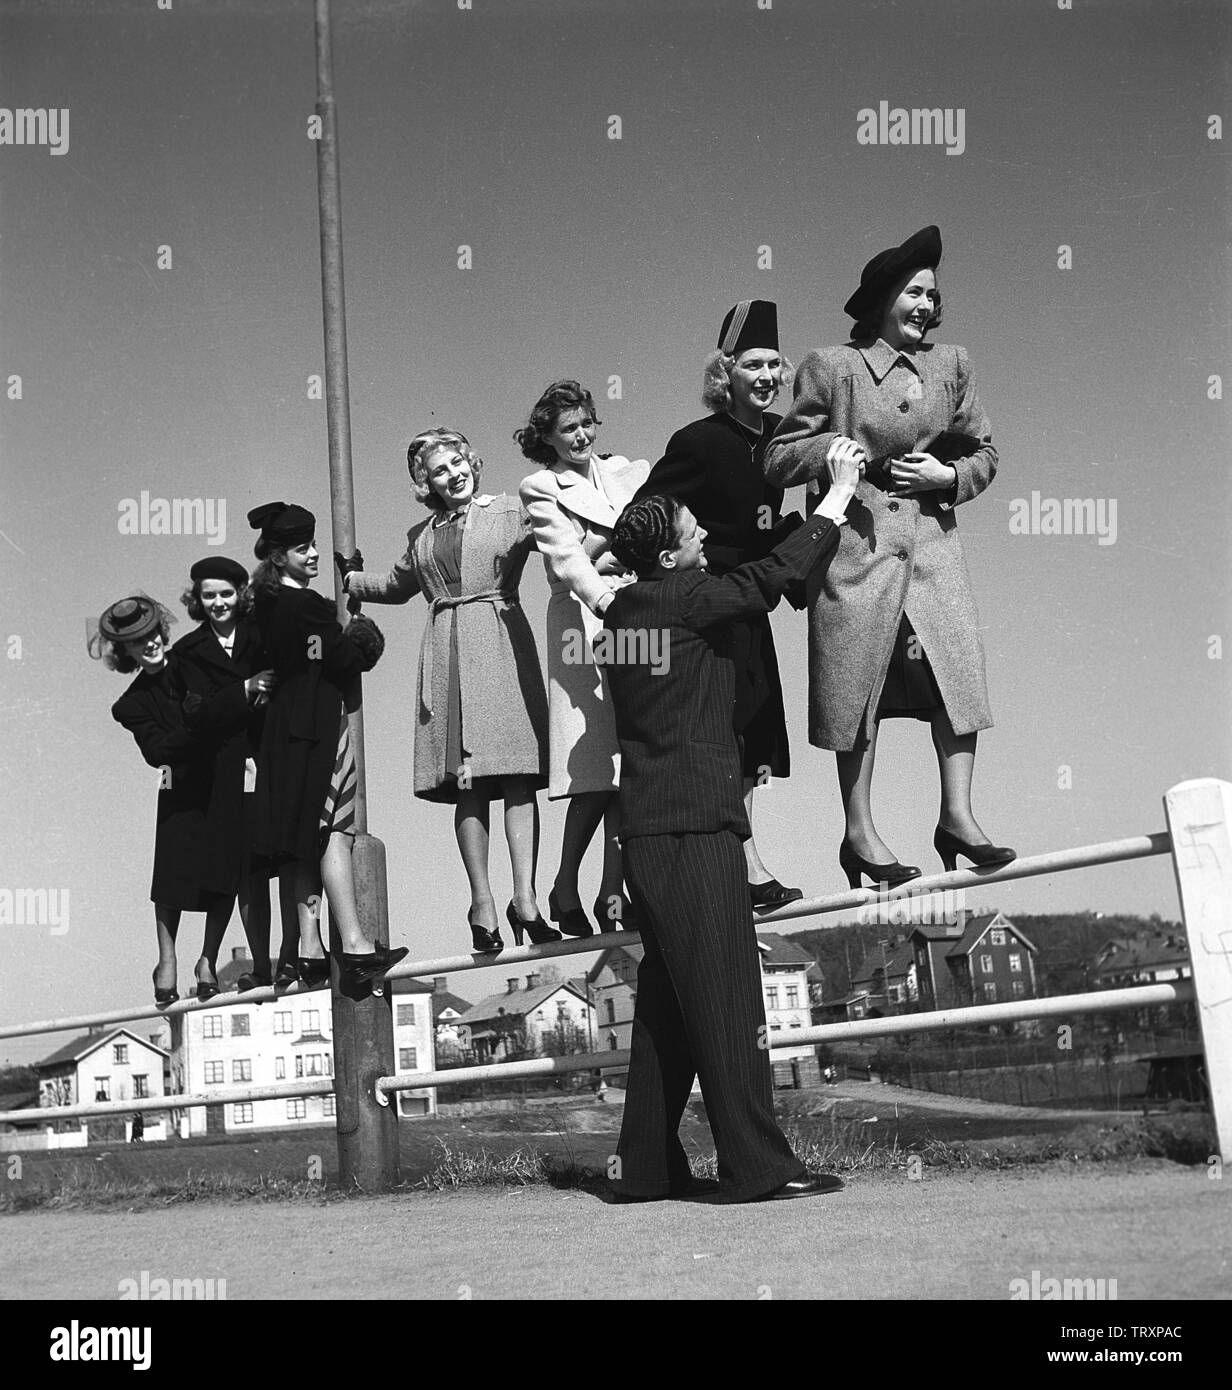 Les femmes des années 40. Sept jeunes femmes sont en équilibre sur une clôture. Un homme est en donnant un coup de main. Photo prise dans la ville Borås où le dire, c'est qu'il y a une pénurie d'hommes seuls. Seule une libre et l'homme seul sur sept femmes. Suède 1942. Kristoffersson Photo ref A42-5 Banque D'Images